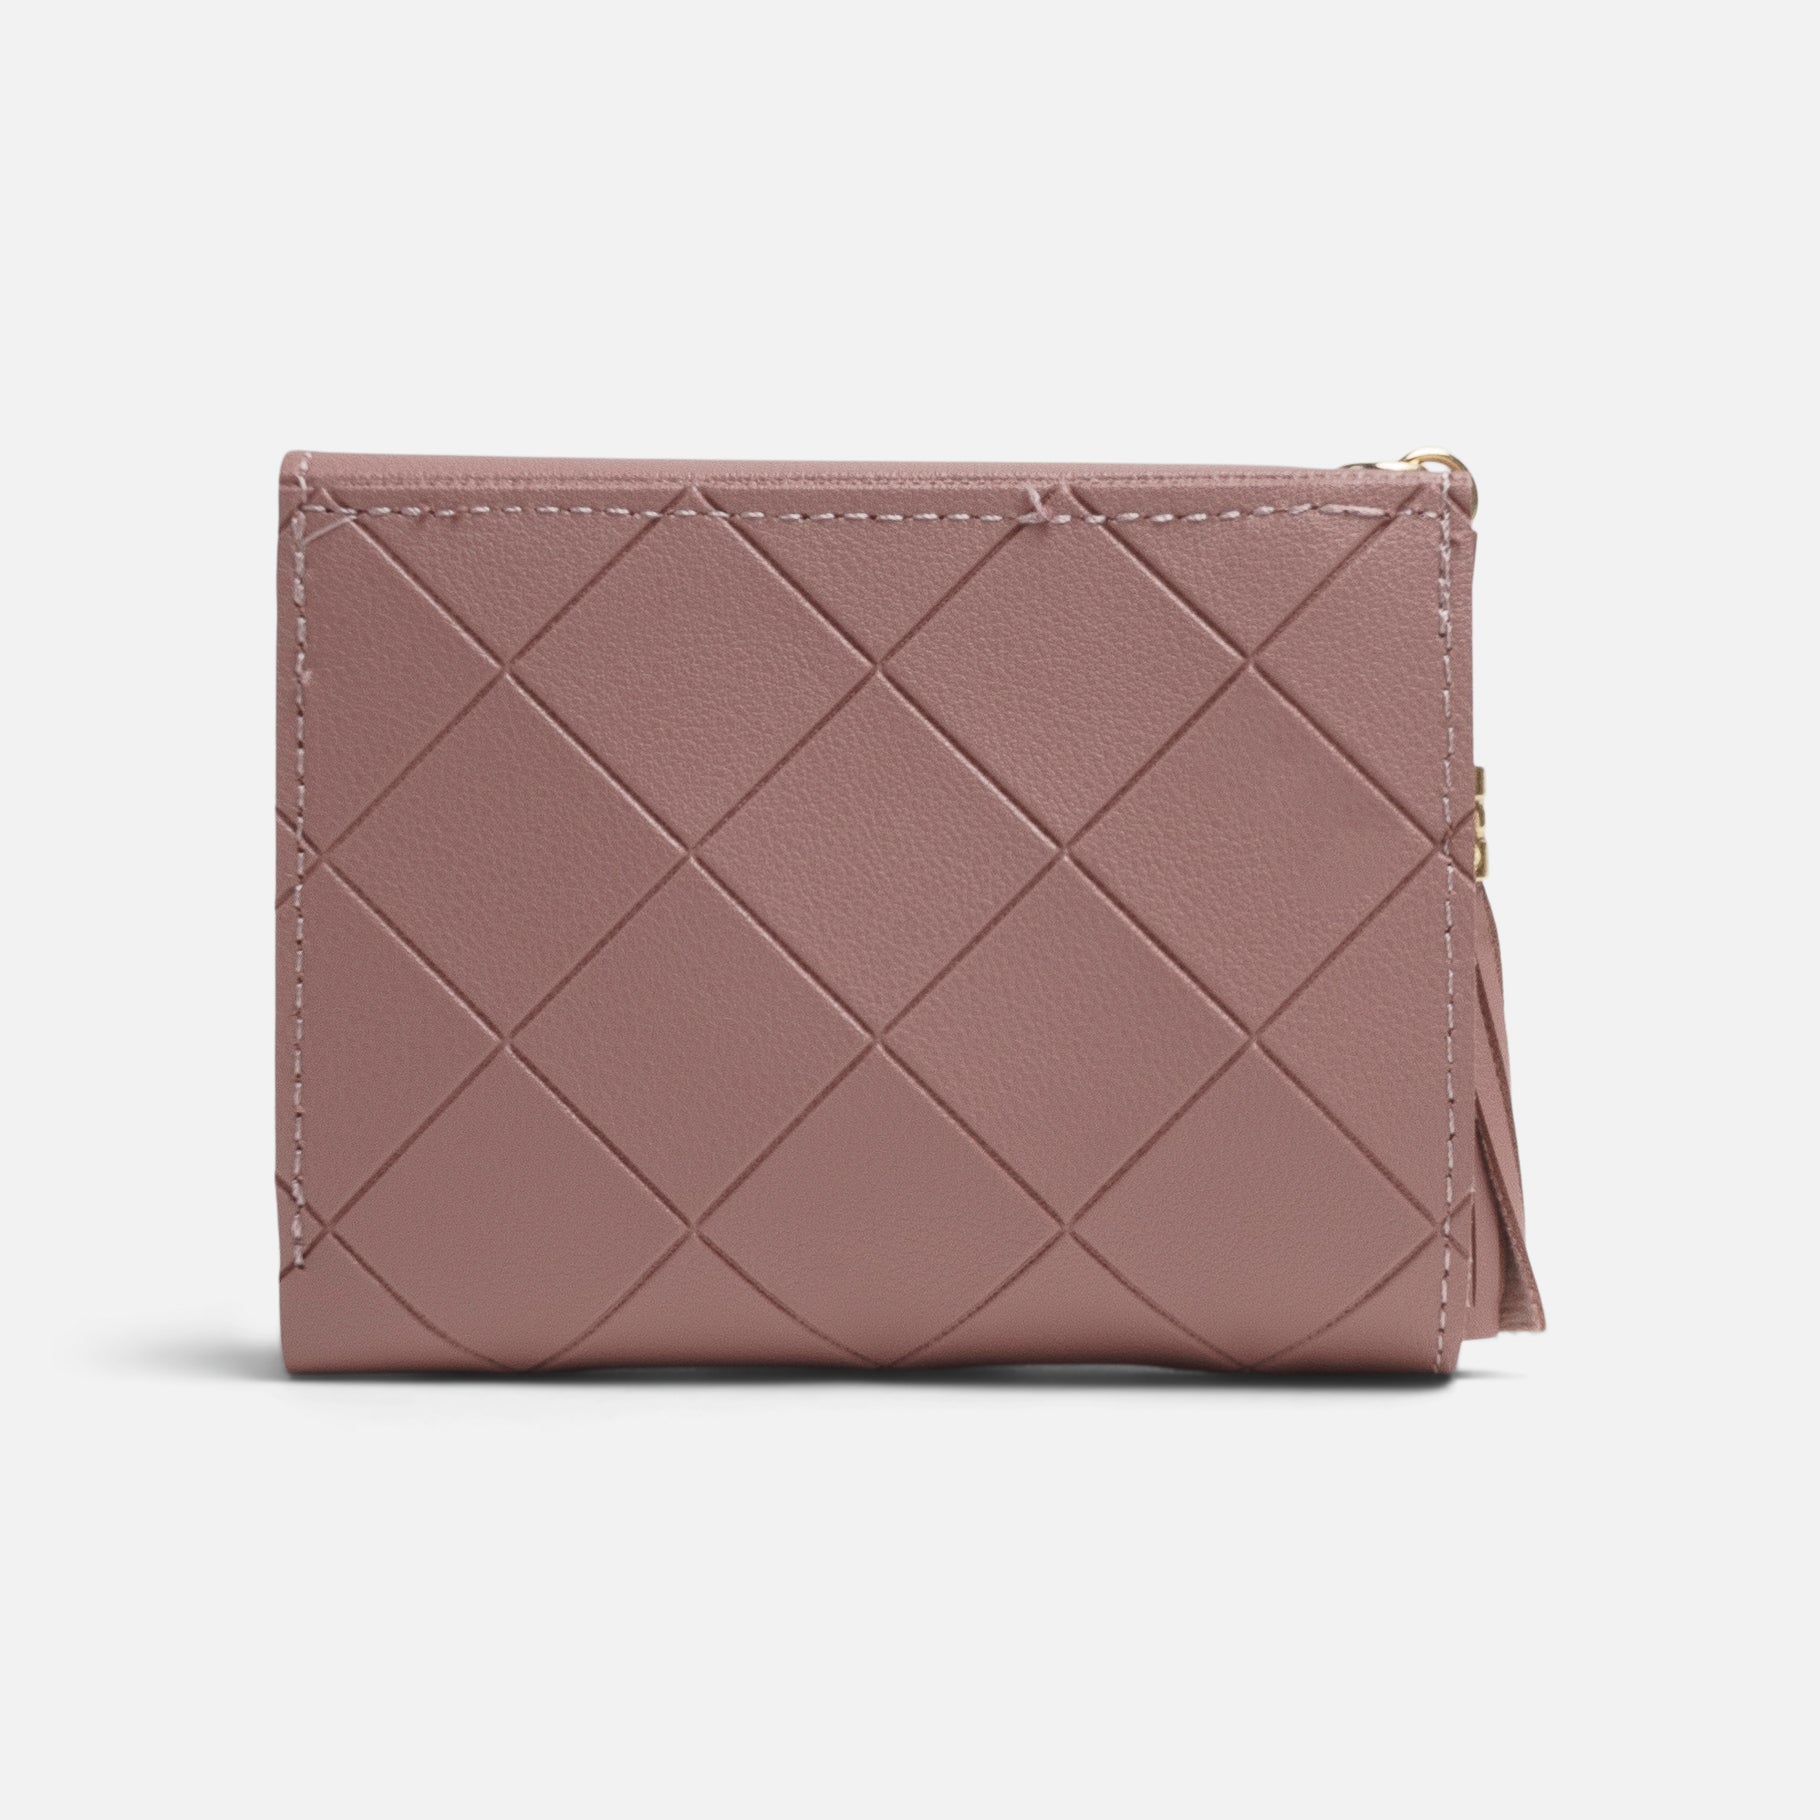 Dark pink flap wallet with braided design